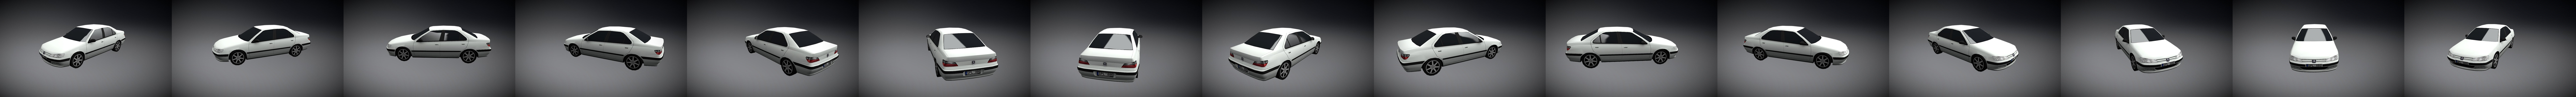 Peugeot 406 Sedan 1996 - 3D Model by arkviz